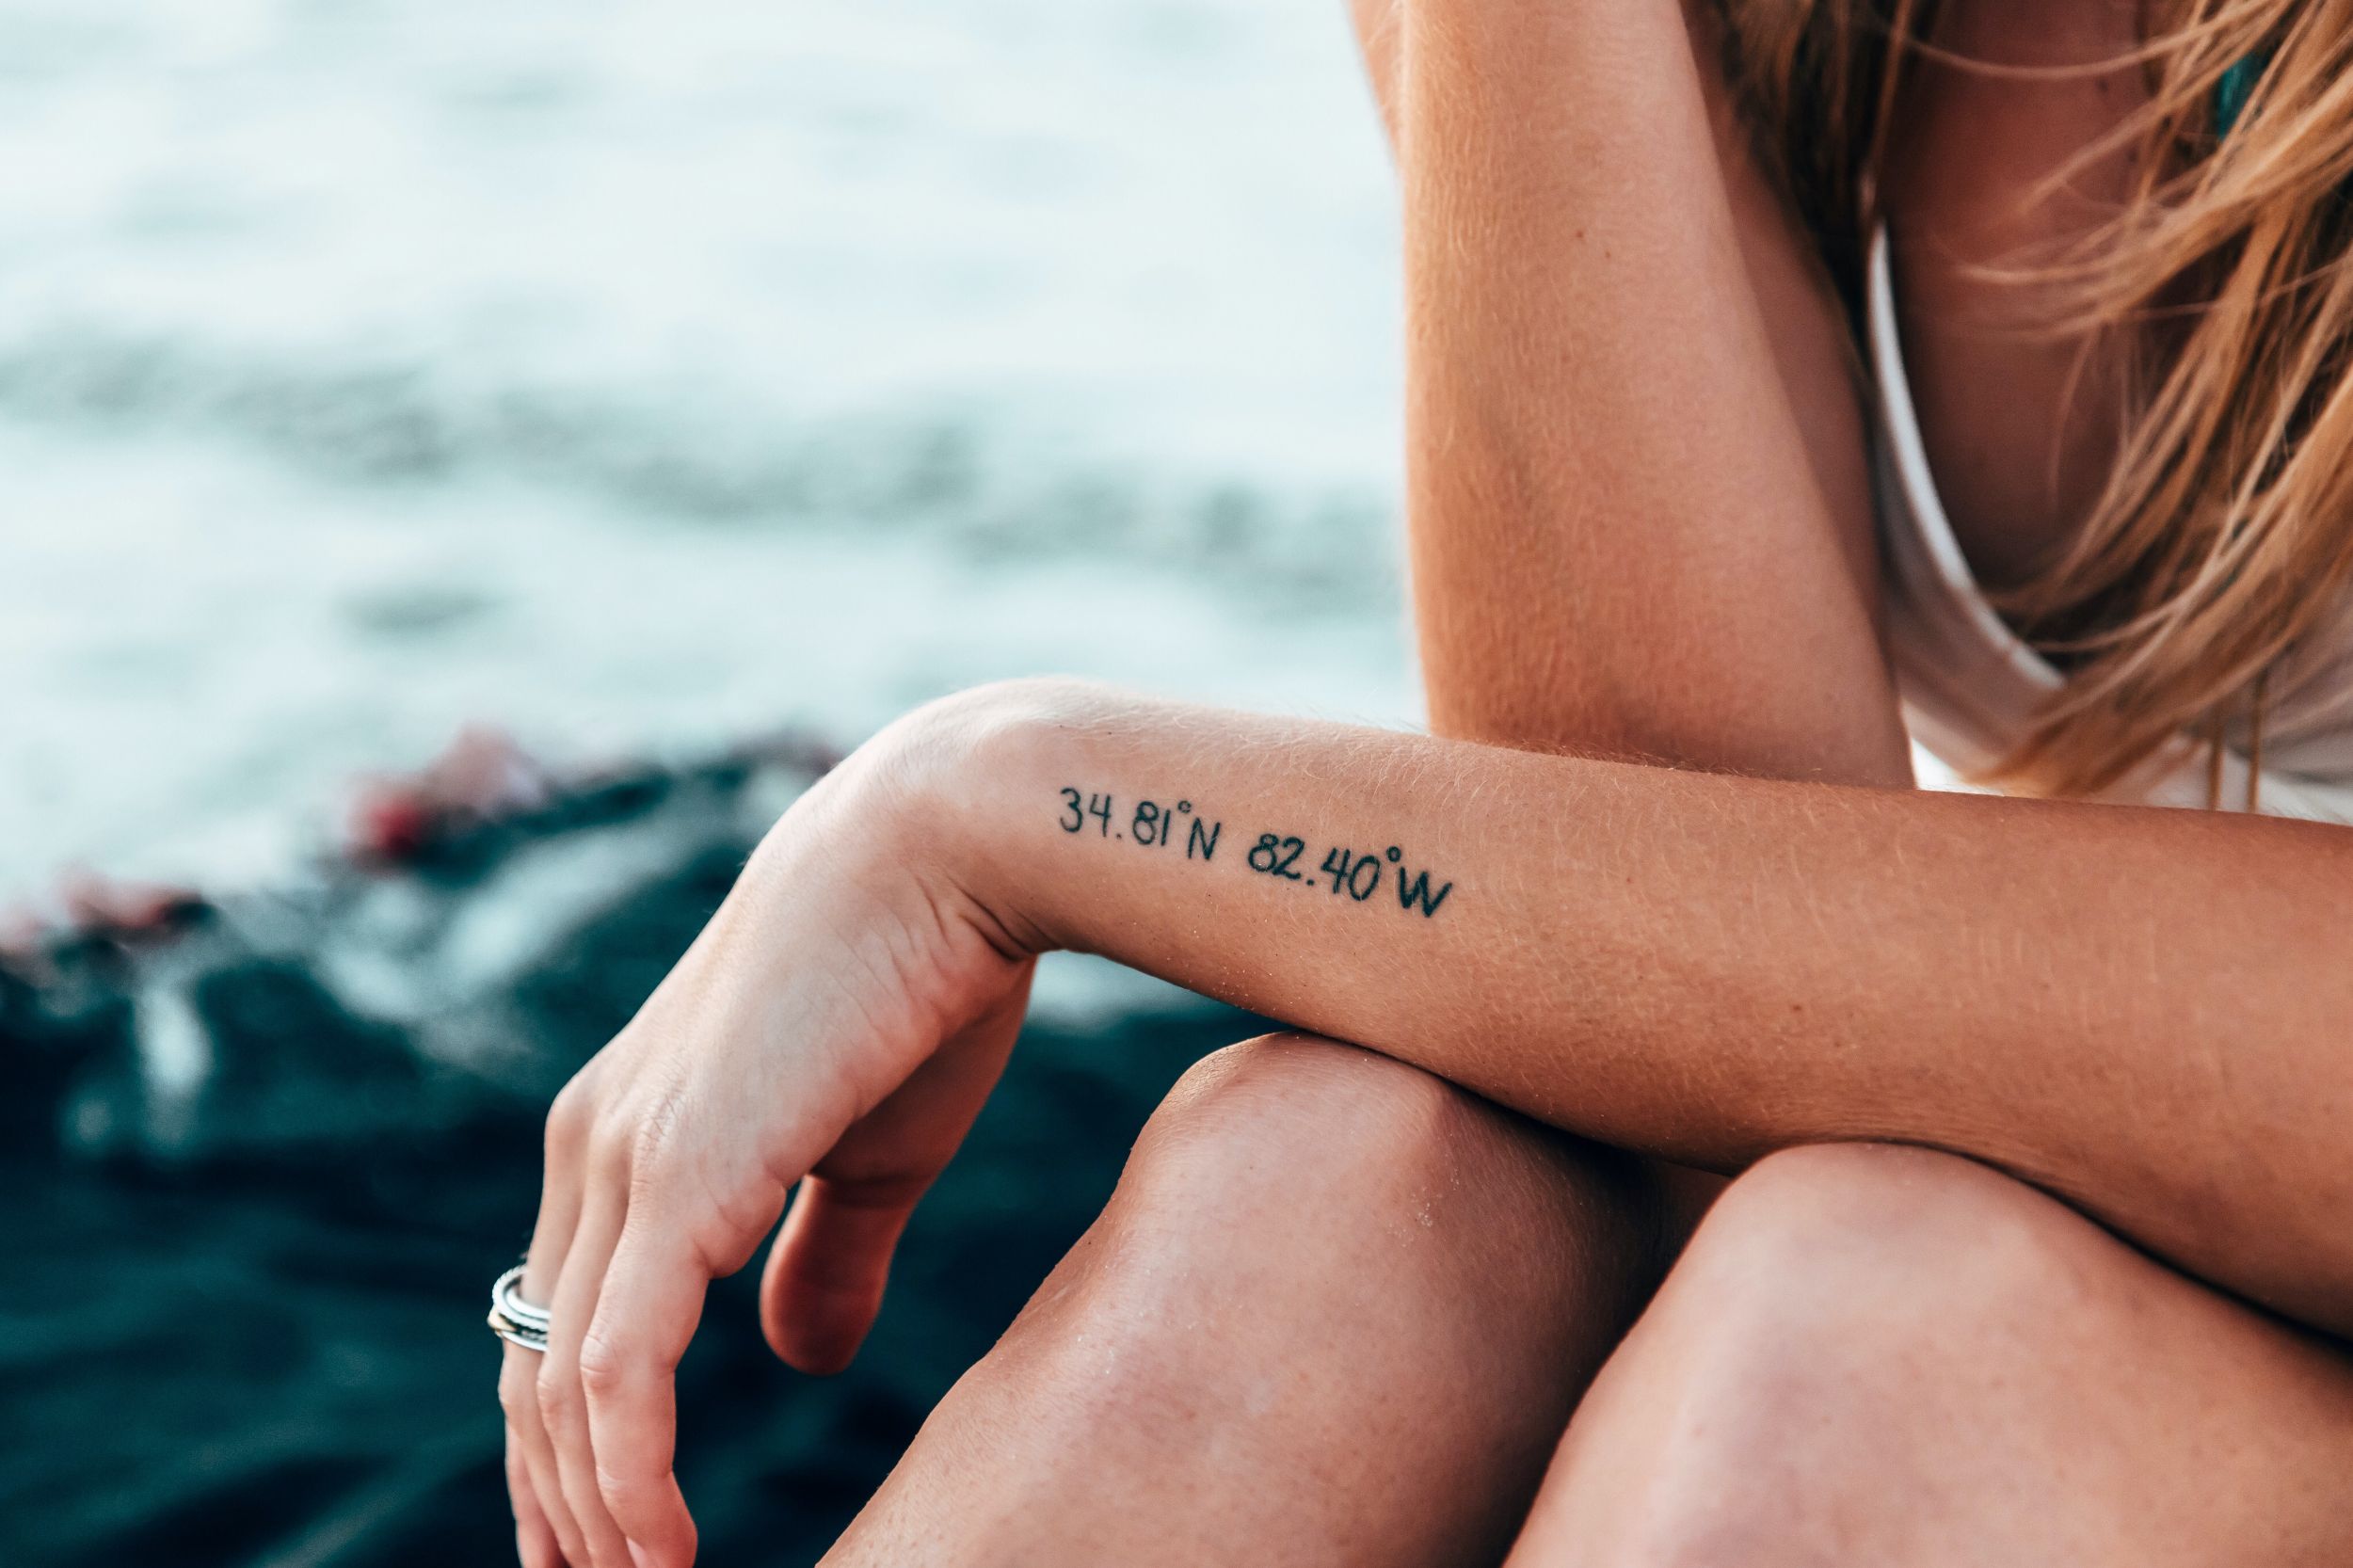 Frau mit kleinem Tattoo am Arm sitzt am Strand im Hintergrund sieht man das Meer